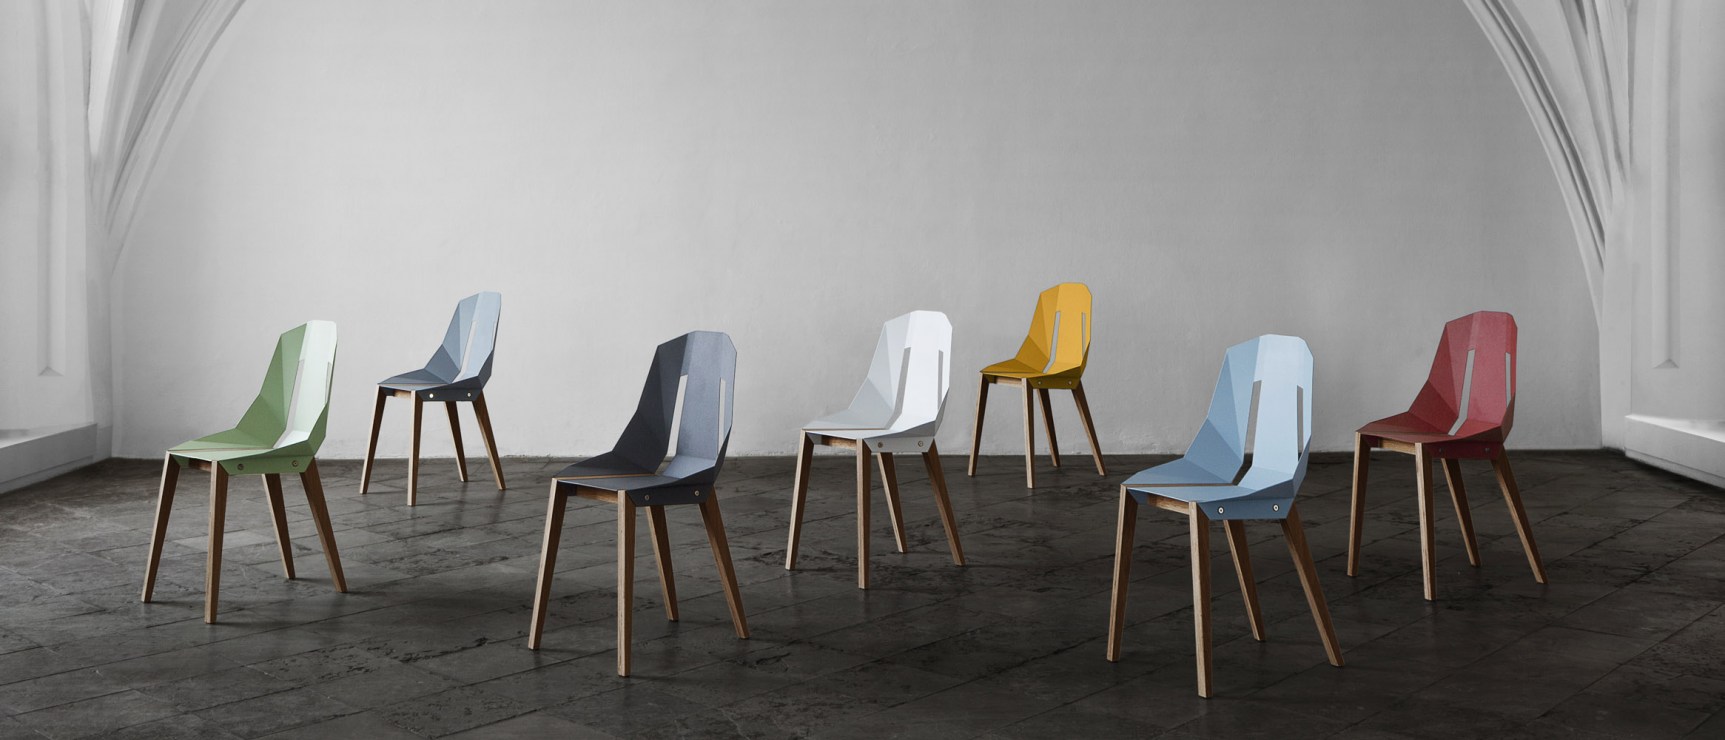 Tabanda, krzesła "Diago", fot. Centrum Designu Gdynia. Praca zaprezentowana na wystawie "Smak przedmiotu" na targach Milan Design Week 2014.